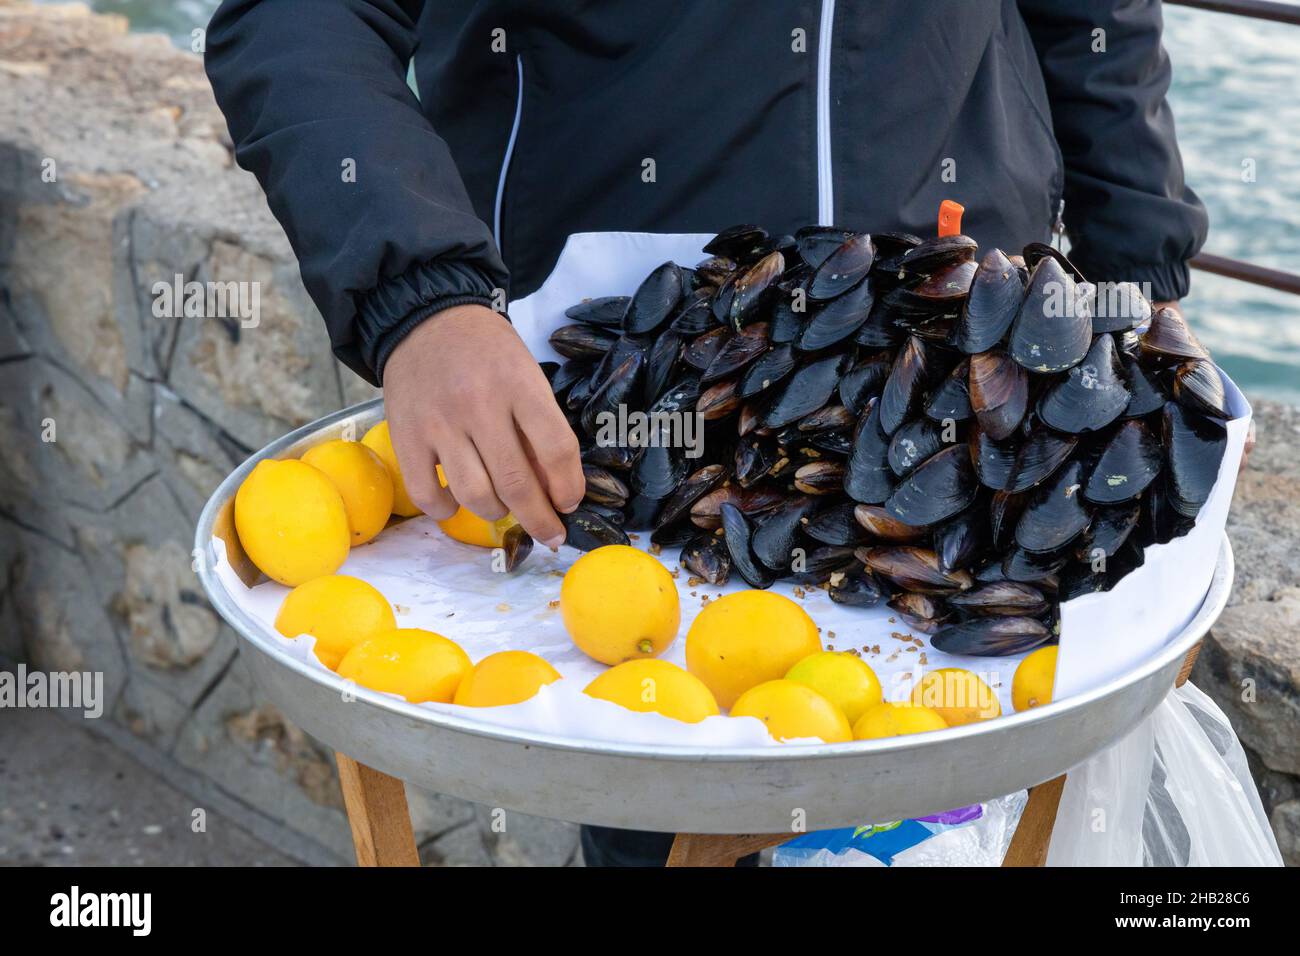 Türkische Stil gefüllte Muscheln auf der Bank zum Verkauf mit einem Stück Zitrone genannt, kann Stock Photo Midye dolma, gefüllte Muscheln Türkisches Meeresfrüchte. Stockfoto